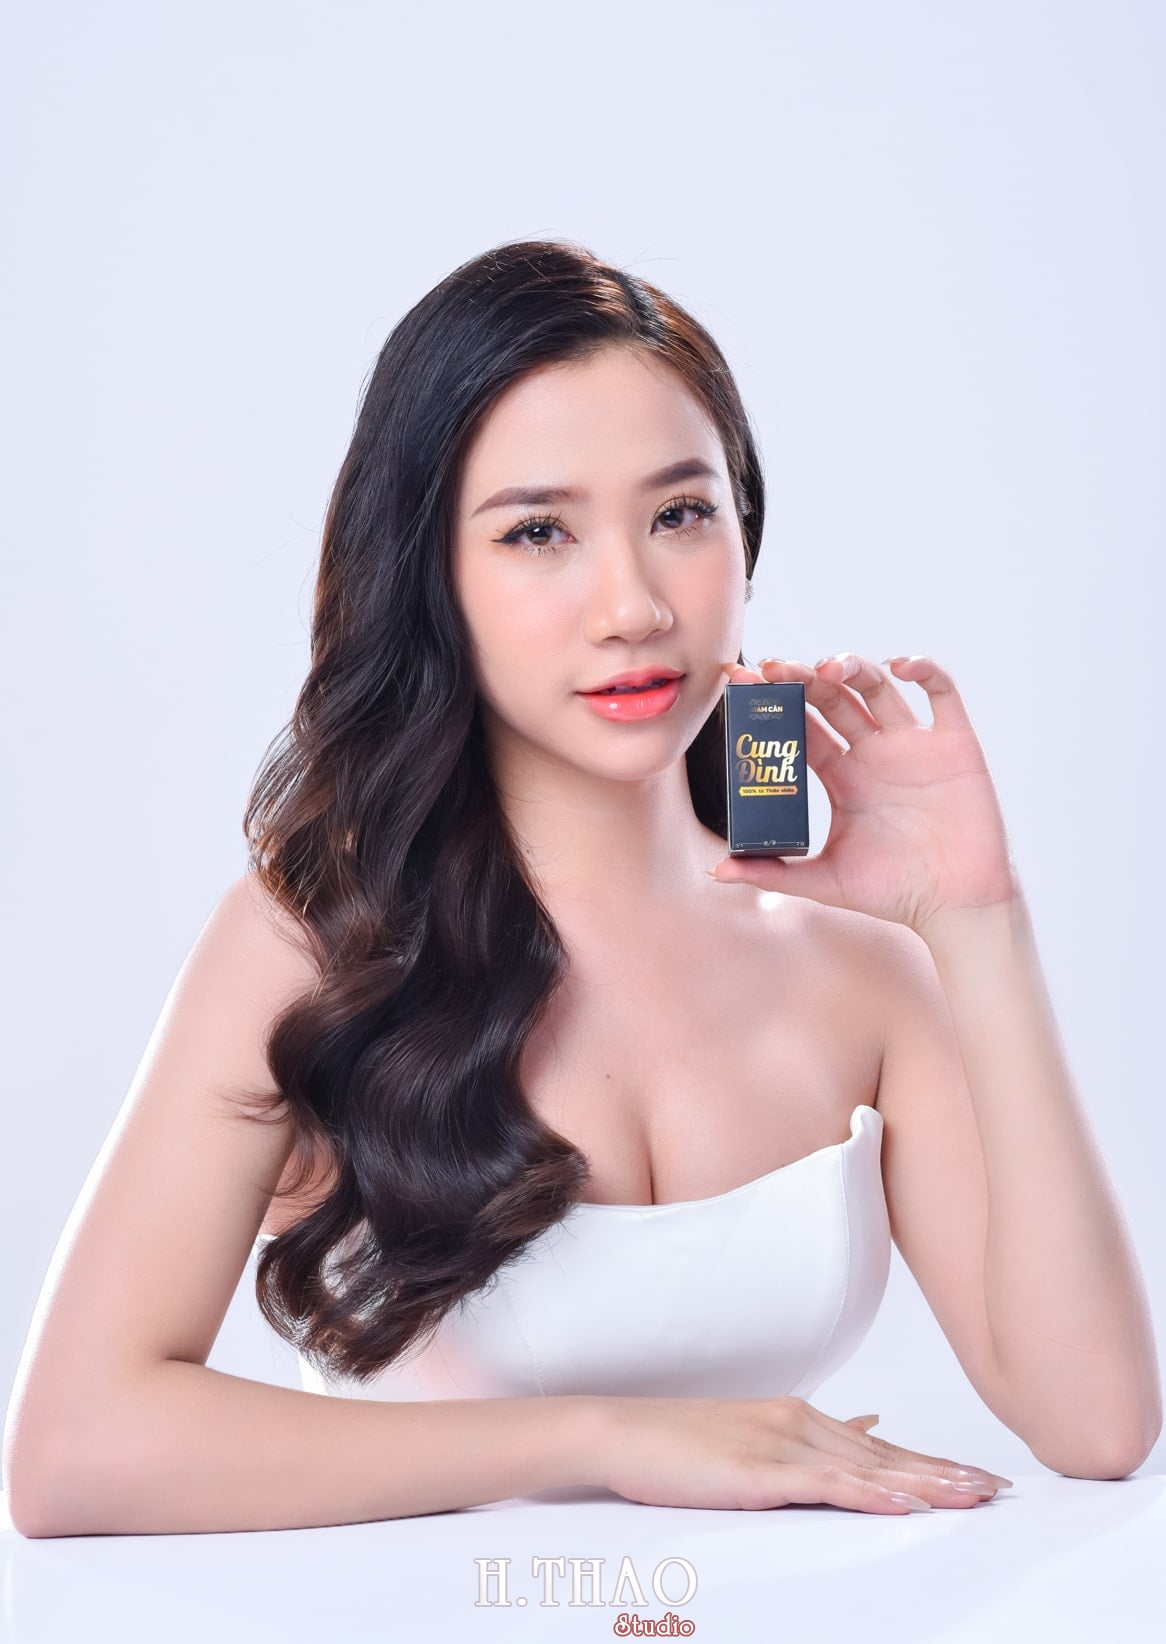 Anh quang cao beauty 3 - Dịch vụ chụp ảnh quảng cáo sản phẩm với người mẫu – HThao Studio